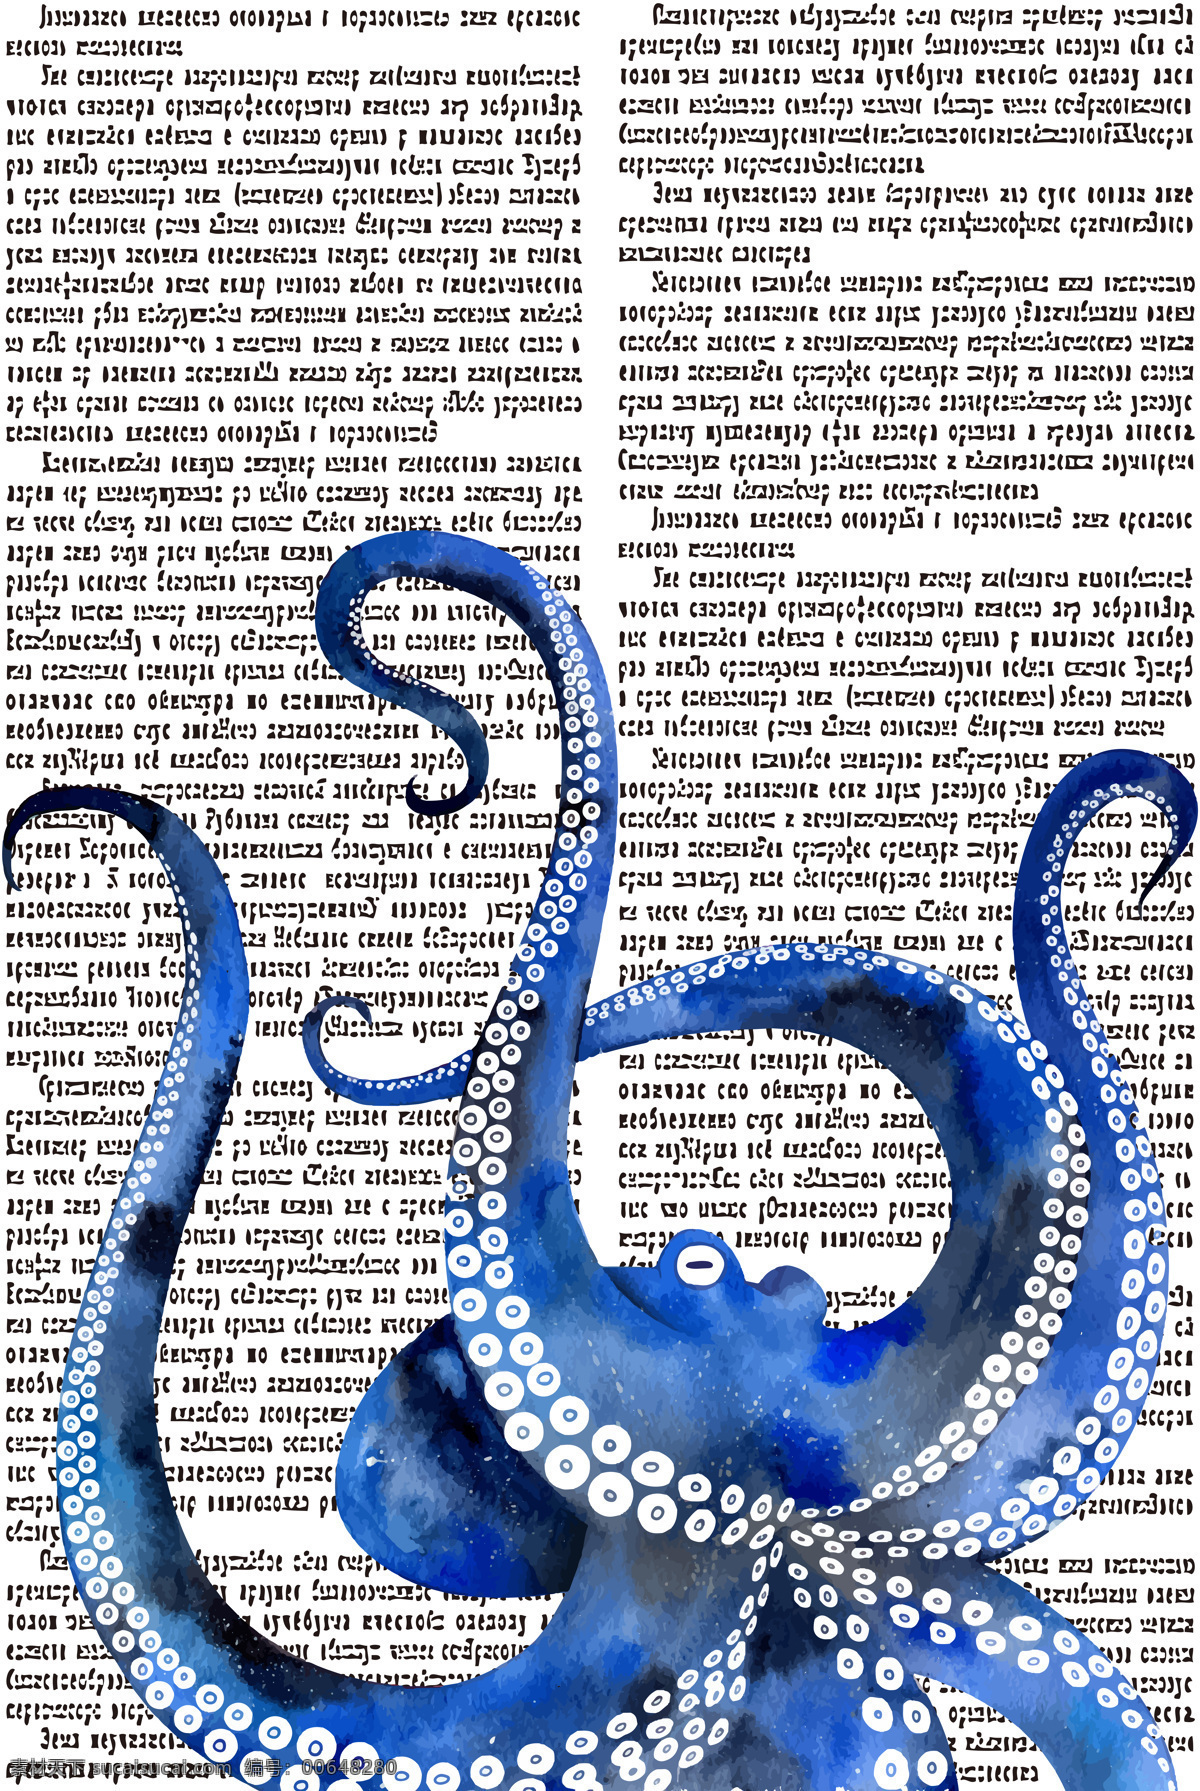 水彩手绘章鱼 插图 水彩画 手绘章鱼 八爪鱼 蓝 报纸素材 环境设计 无框画